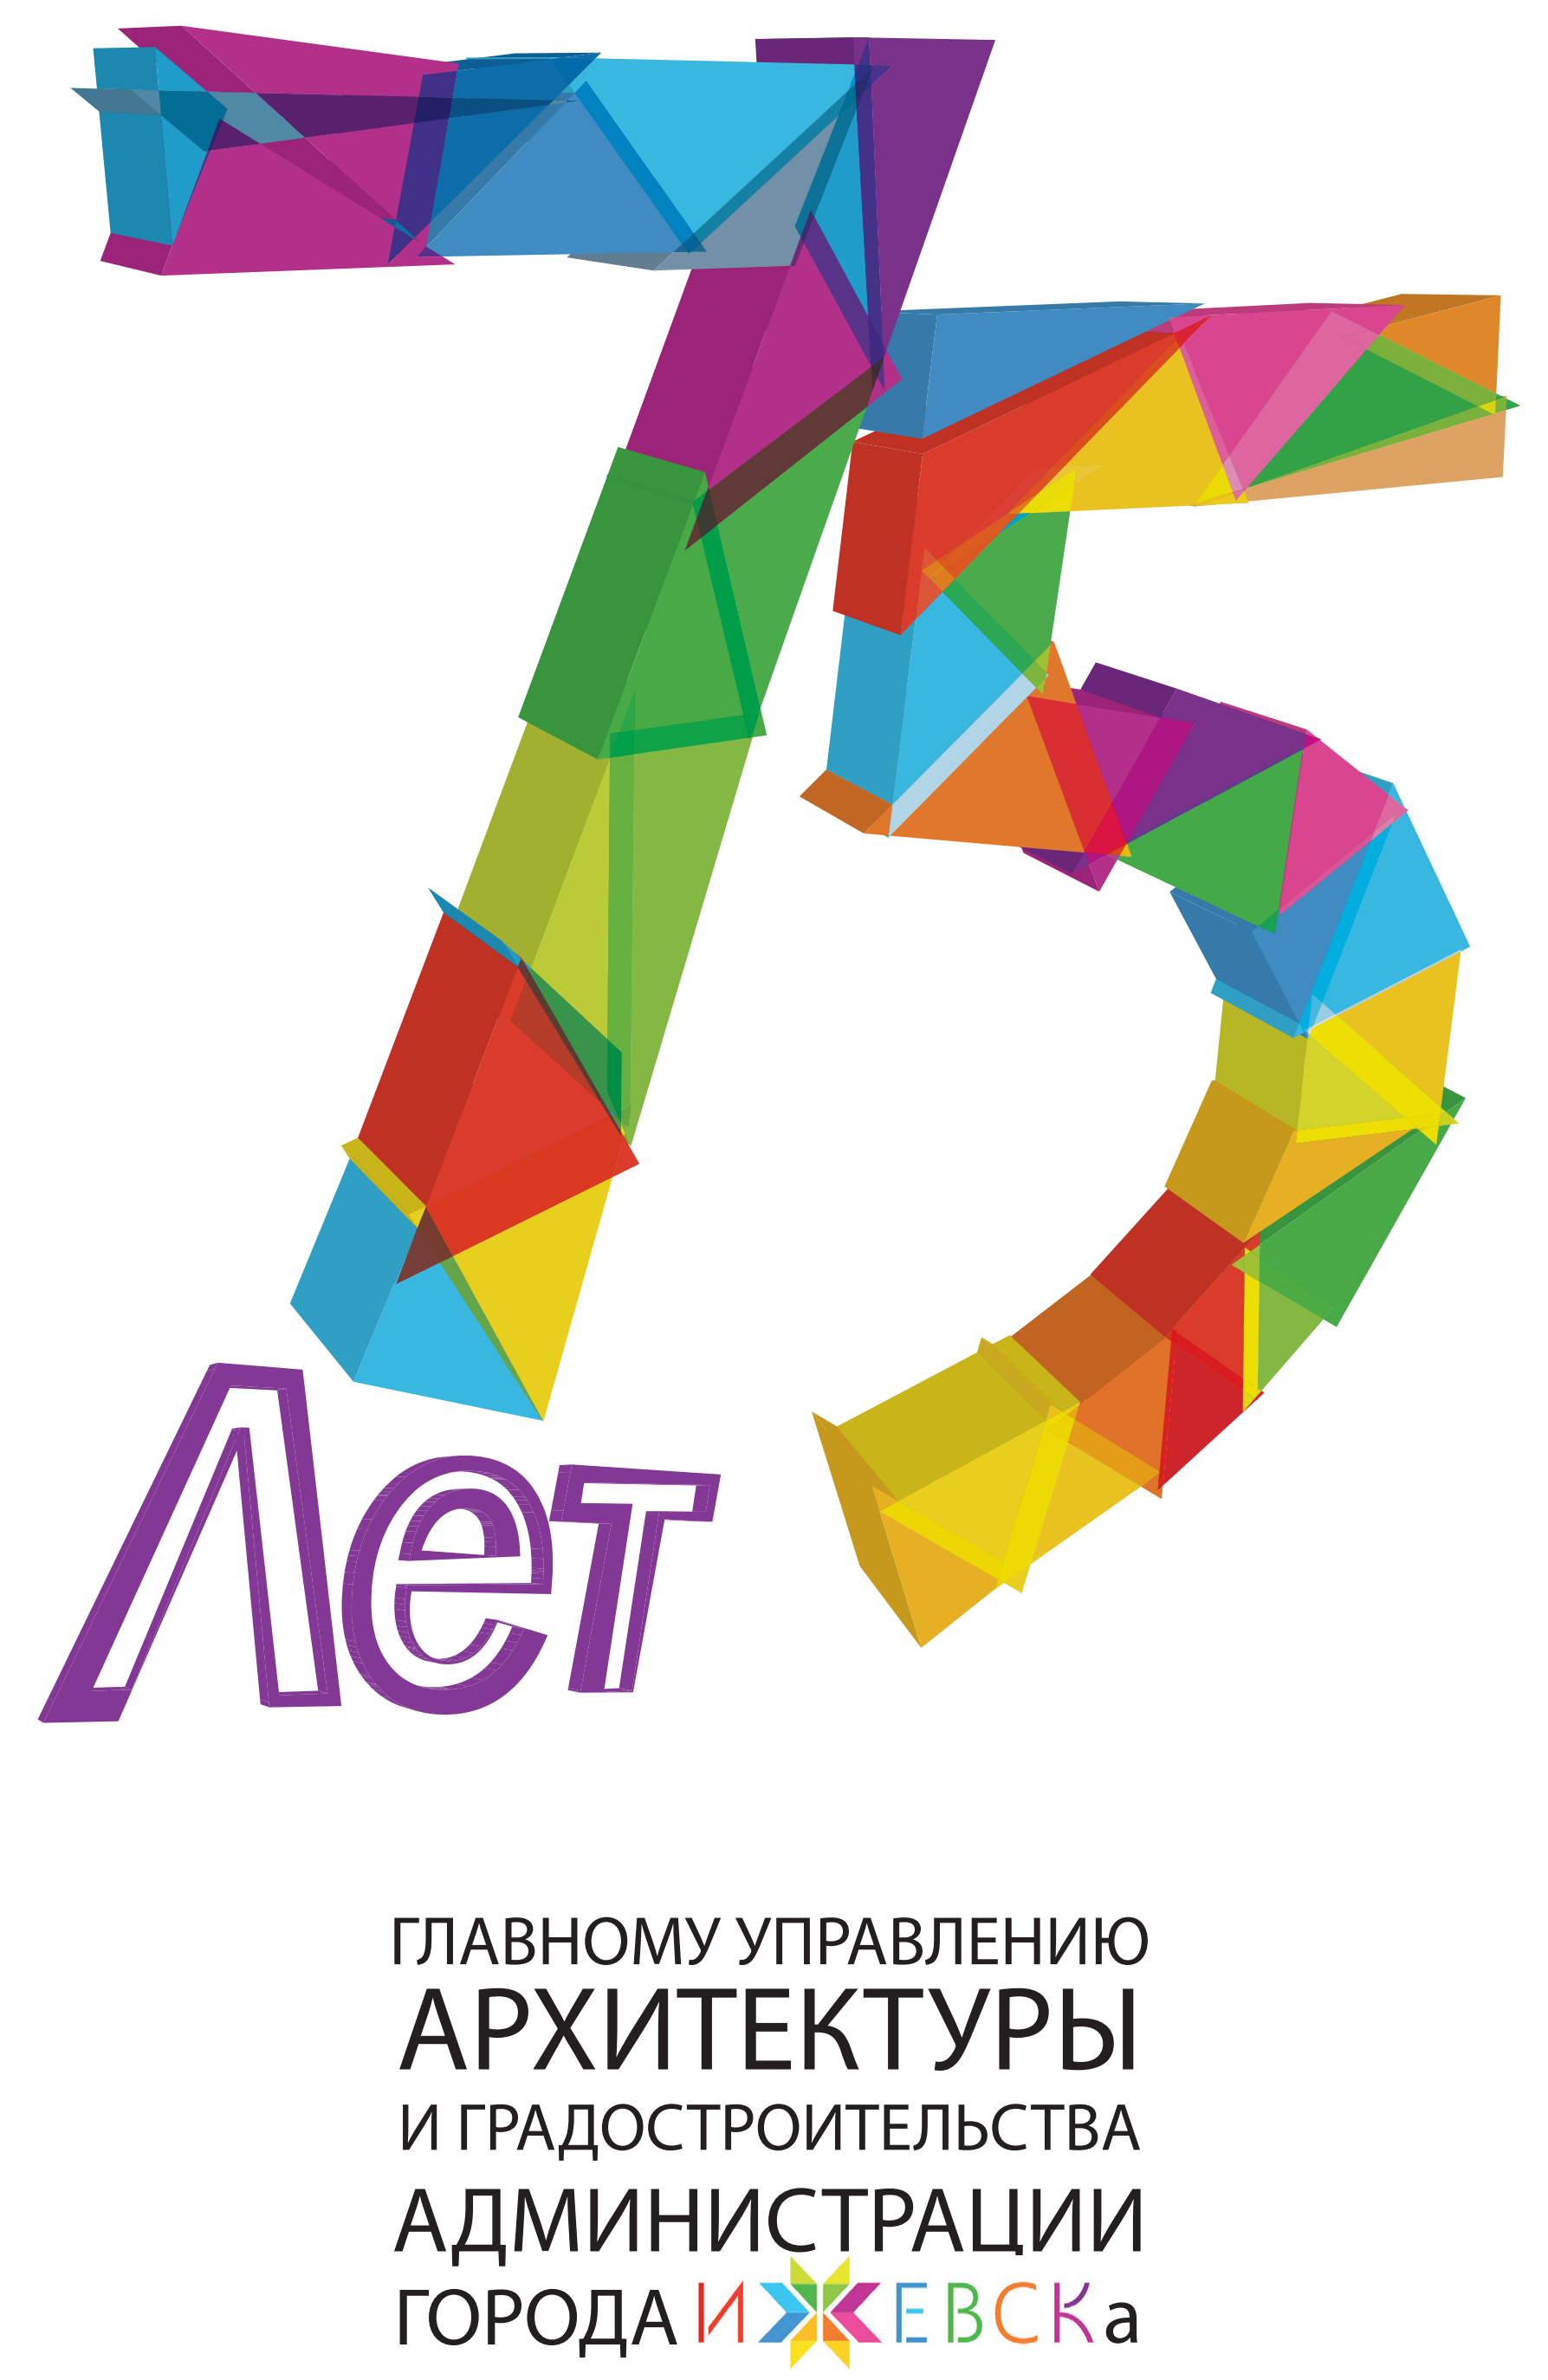 1 ноября 2015 года исполняется 75 лет со дня создания городского органа управления архитектурой в Ижевске